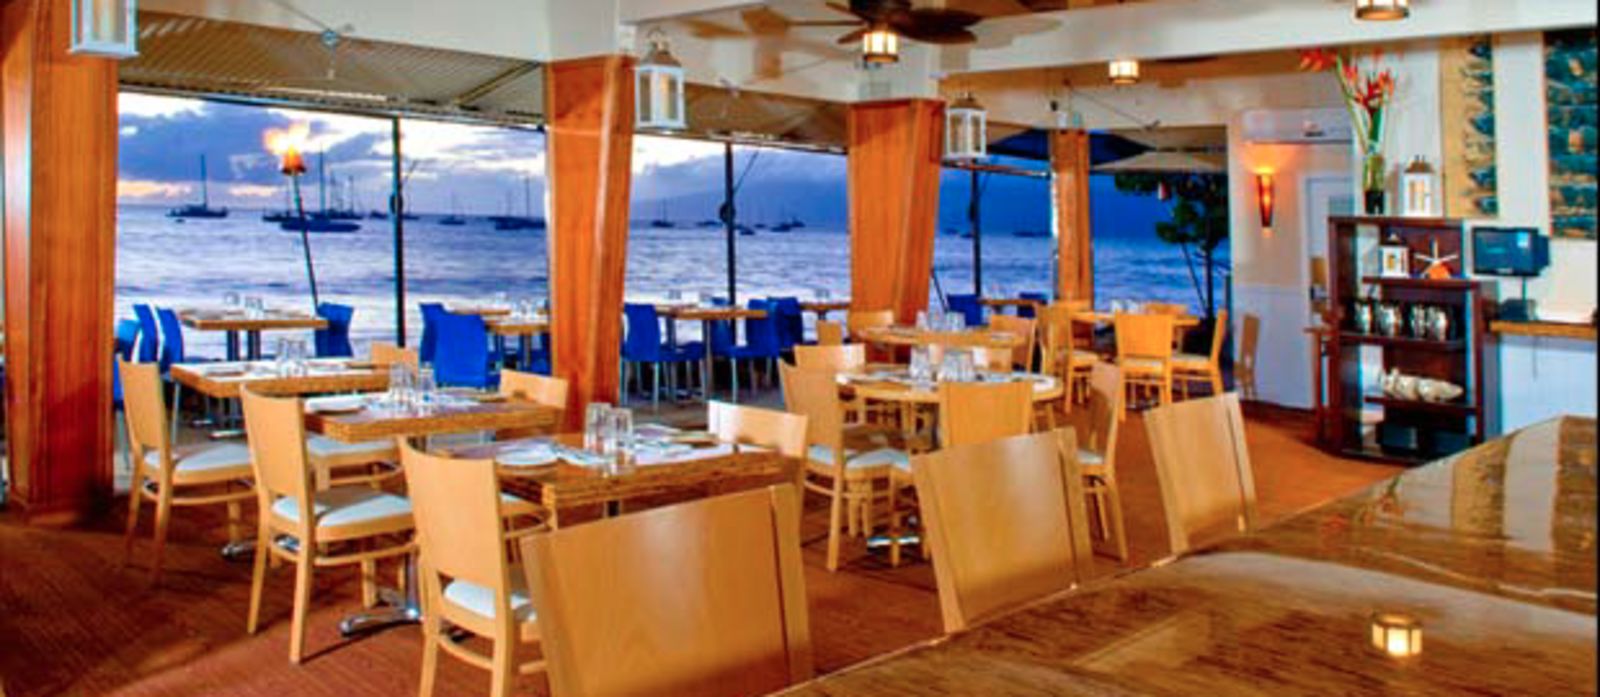 Honu Restaurant auf Maui